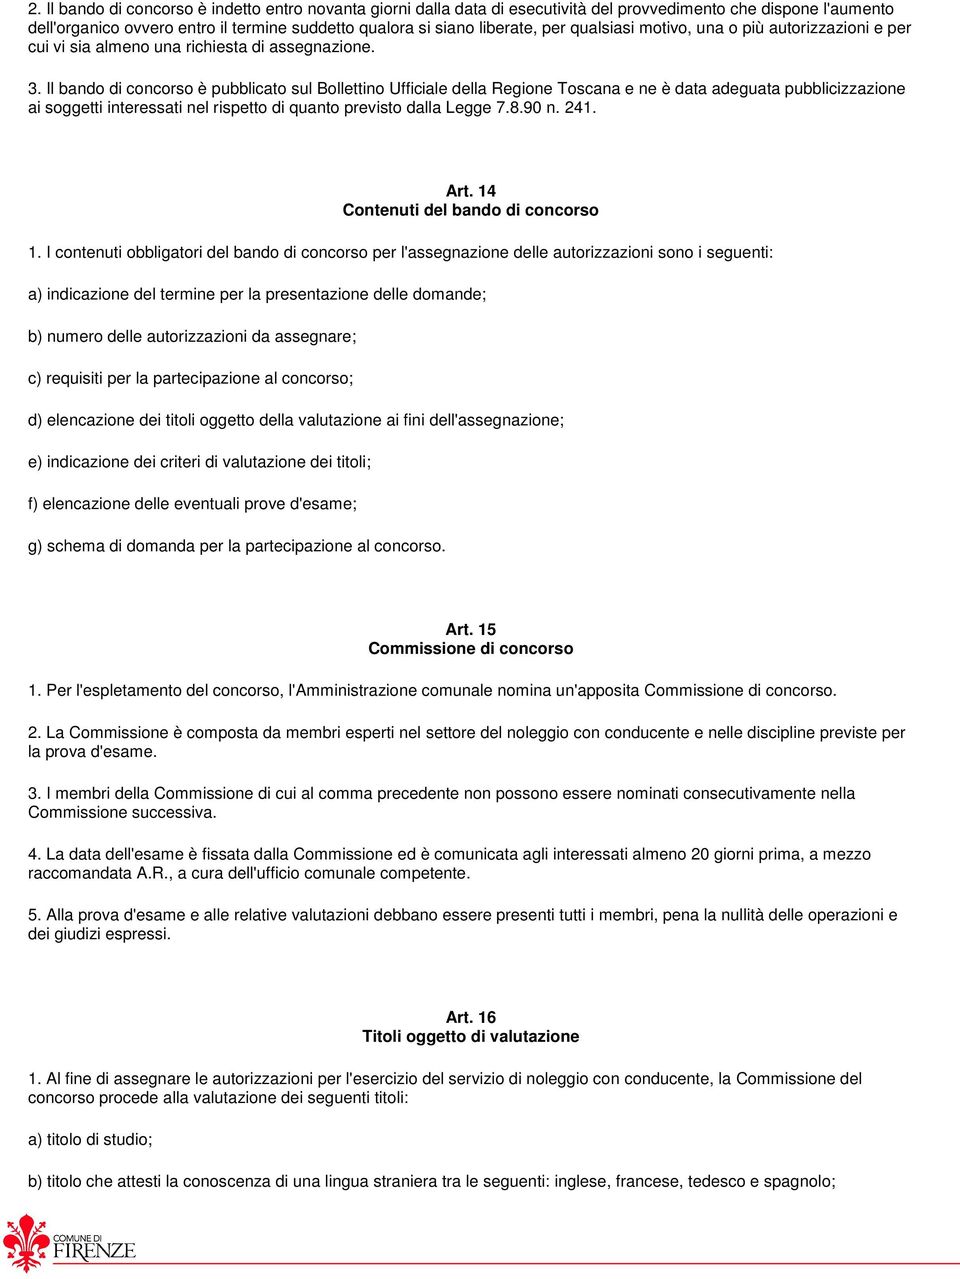 Il bando di concorso è pubblicato sul Bollettino Ufficiale della Regione Toscana e ne è data adeguata pubblicizzazione ai soggetti interessati nel rispetto di quanto previsto dalla Legge 7.8.90 n.